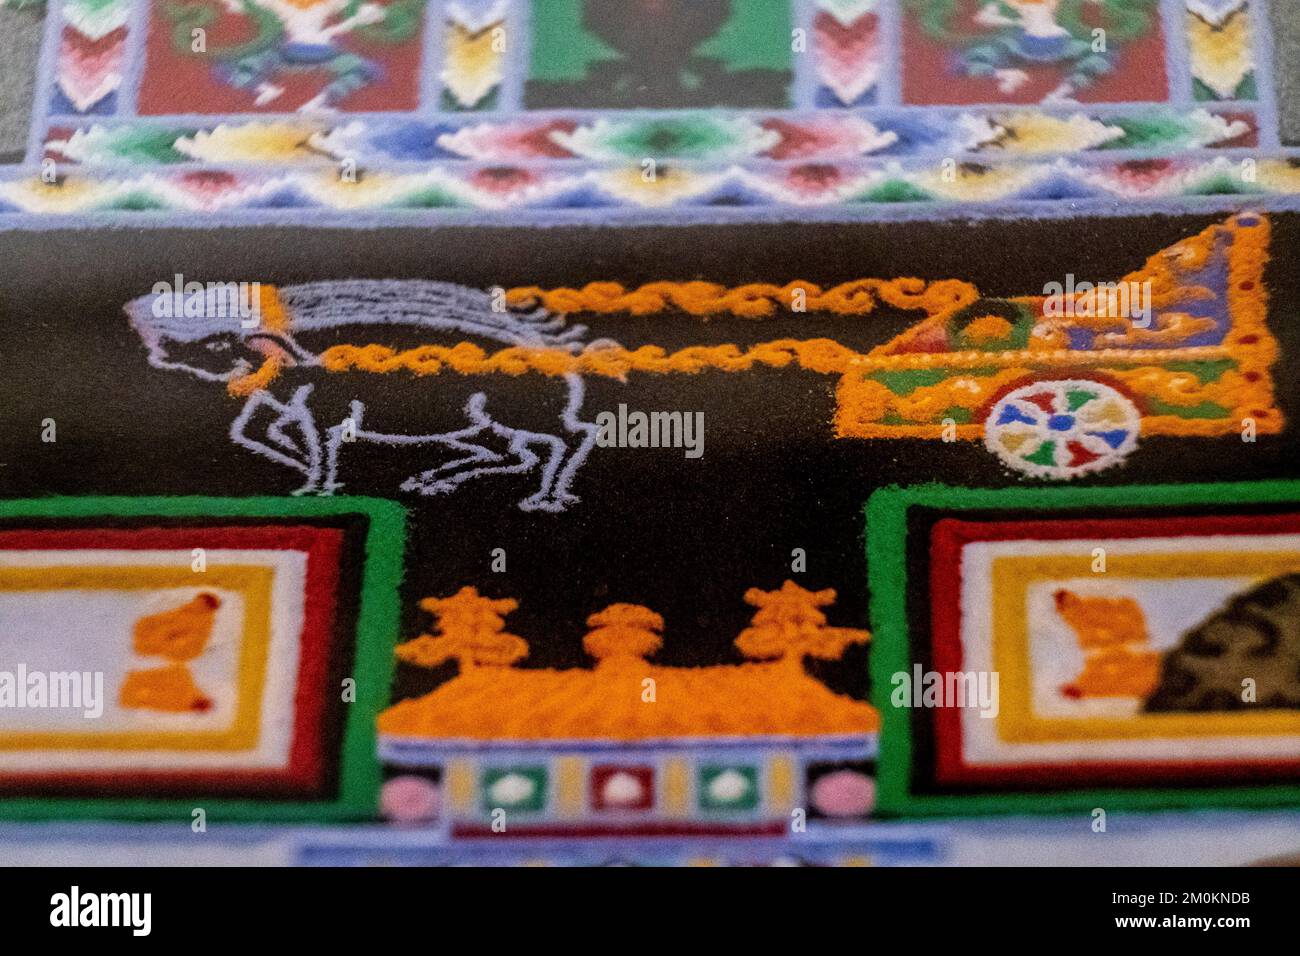 pig drawn cart, Kalachakcra buddhist mandala, Dalai Lama gift, pollensa museum, Majorca, Balearic Islands, Spain Stock Photo